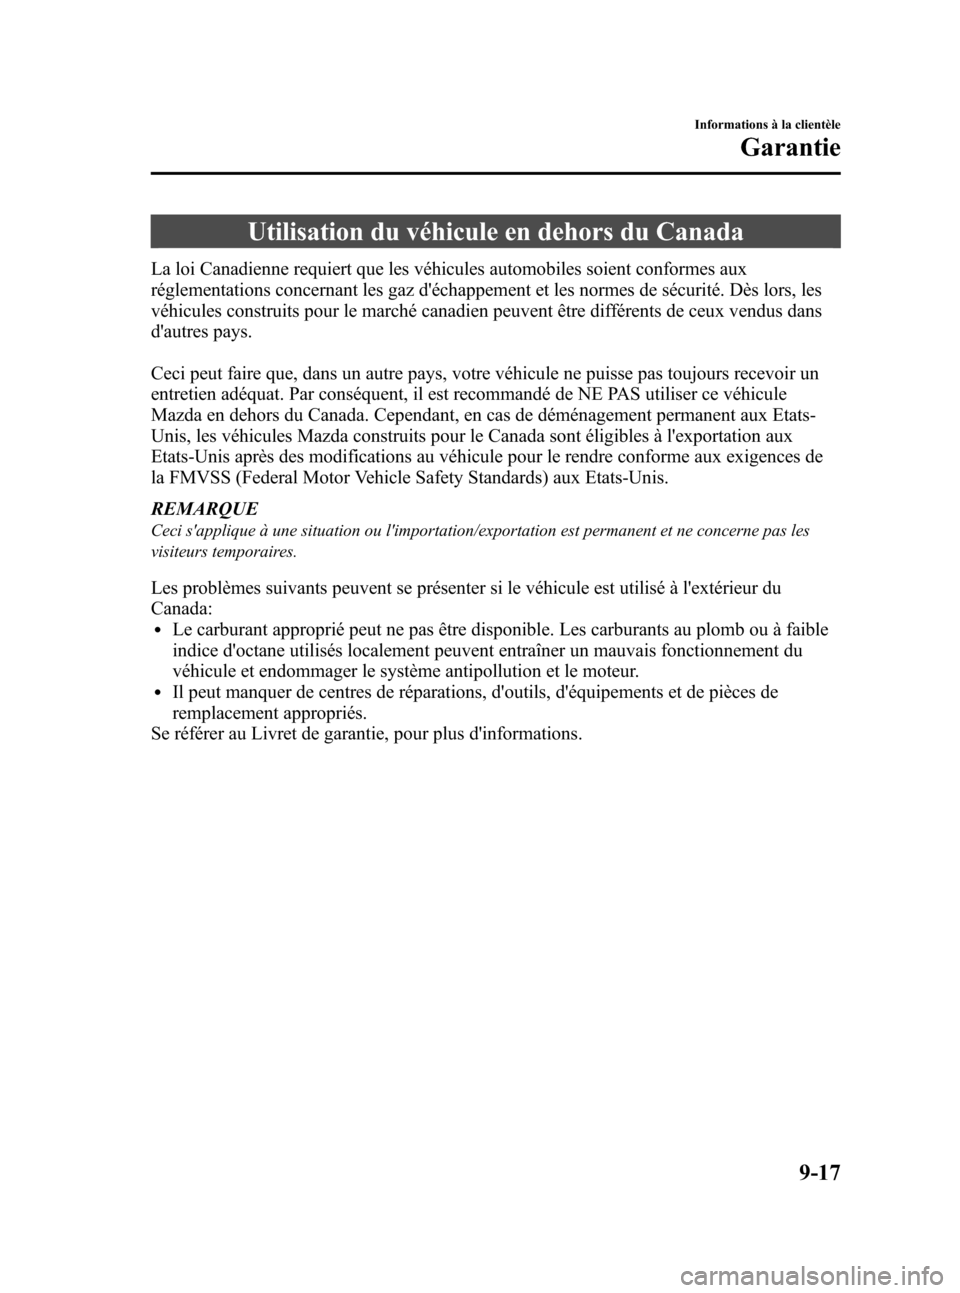 MAZDA MODEL 3 HATCHBACK 2010  Manuel du propriétaire (in French) Black plate (483,1)
Utilisation du véhicule en dehors du Canada
La loi Canadienne requiert que les véhicules automobiles soient conformes aux
réglementations concernant les gaz déchappement et le